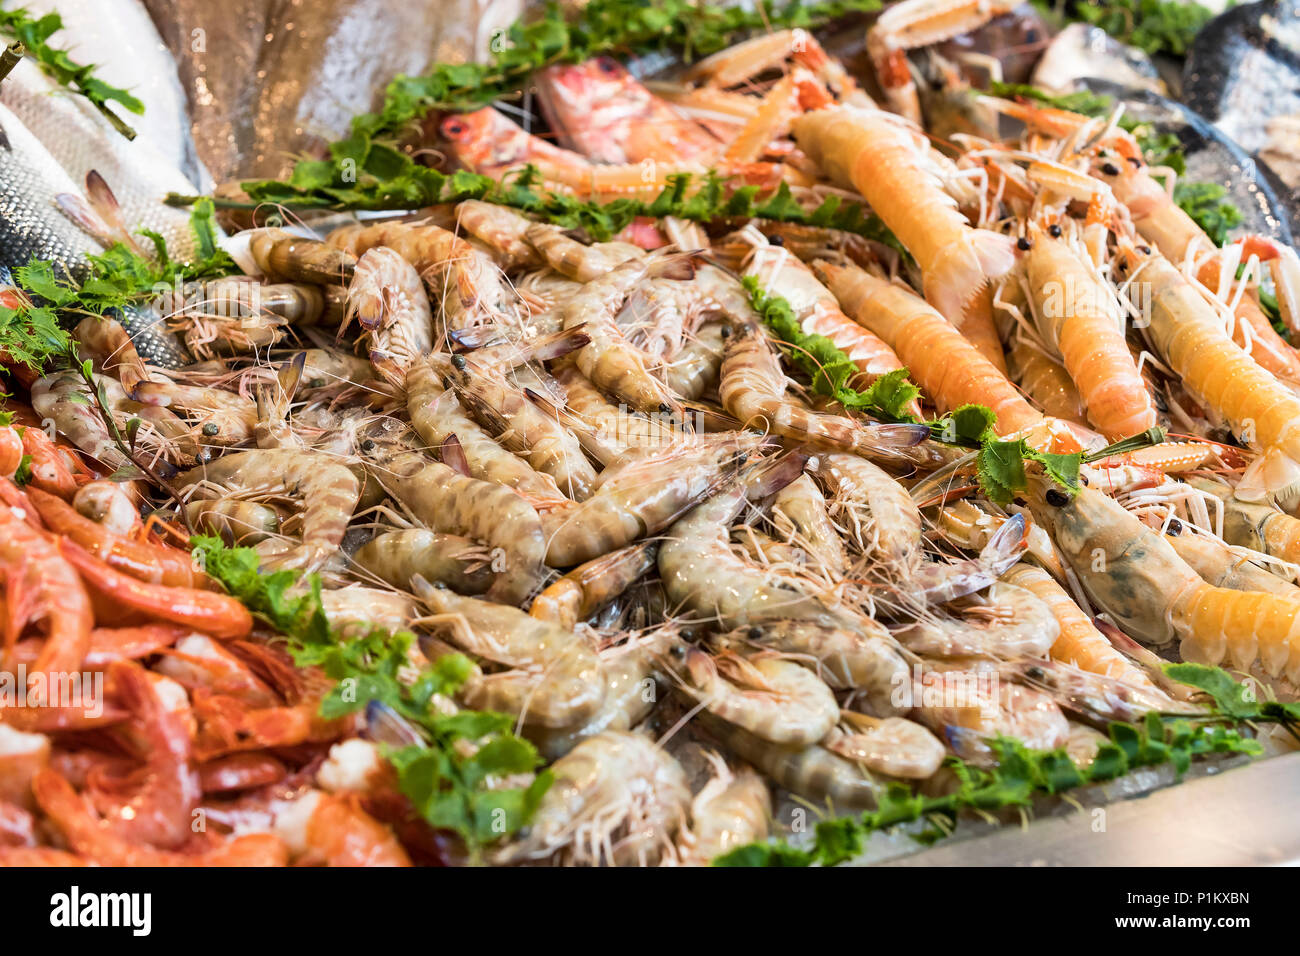 Hintergrund der Fische, Garnelen Muscheln in den Märkten von Mailand in Italien. Stockfoto